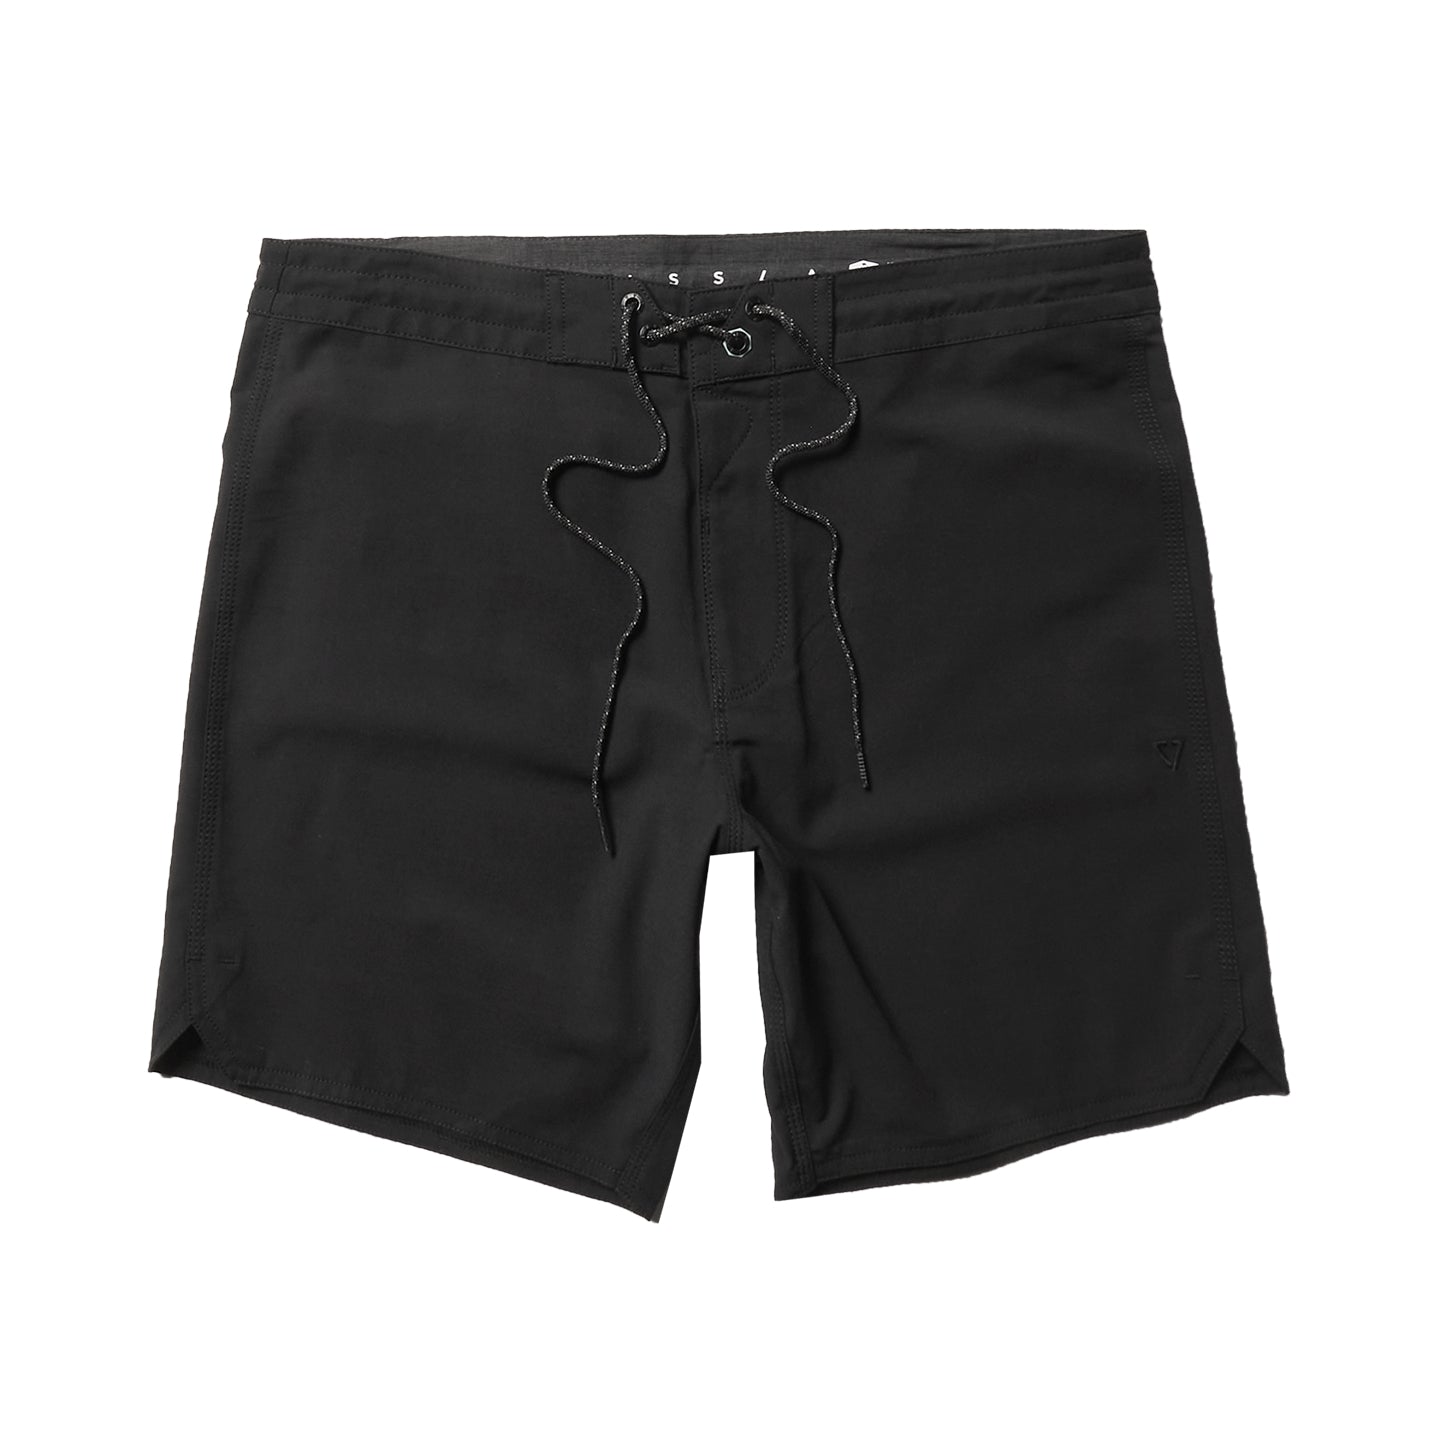 Vissla Short Sets 16.5 Boardshorts B2-Black 31